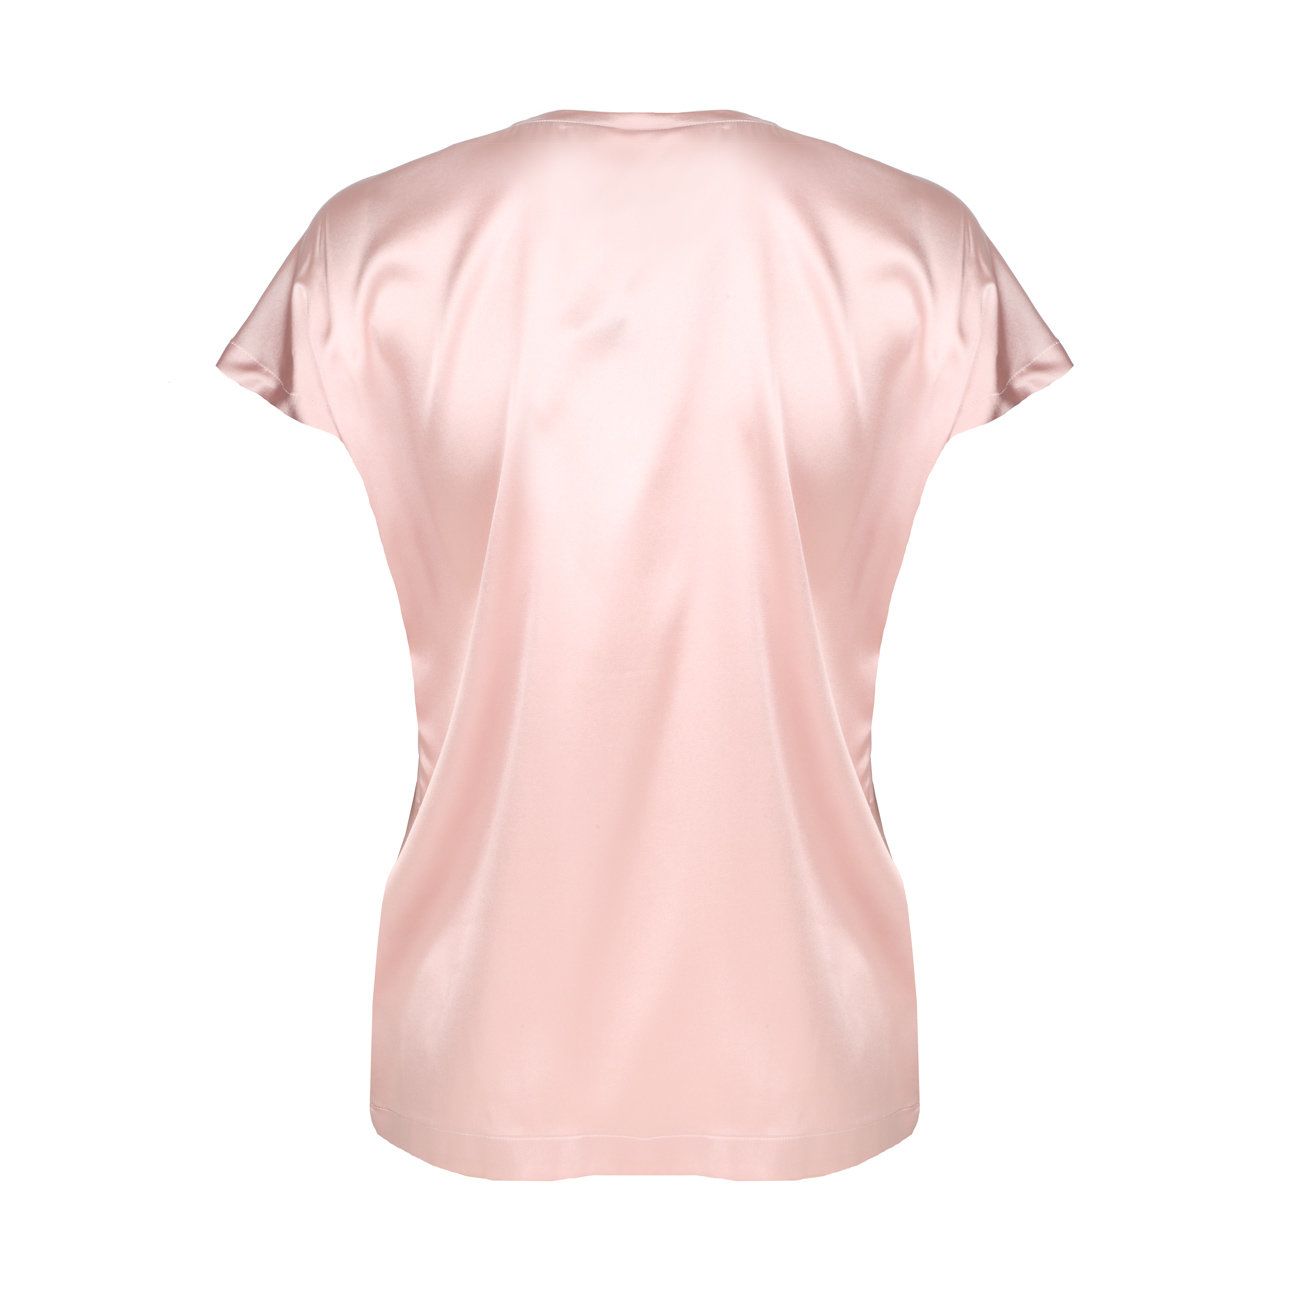 MODA DONNA Camicie & T-shirt Volant Rosa Unica sconto 85% NoName T-shirt 